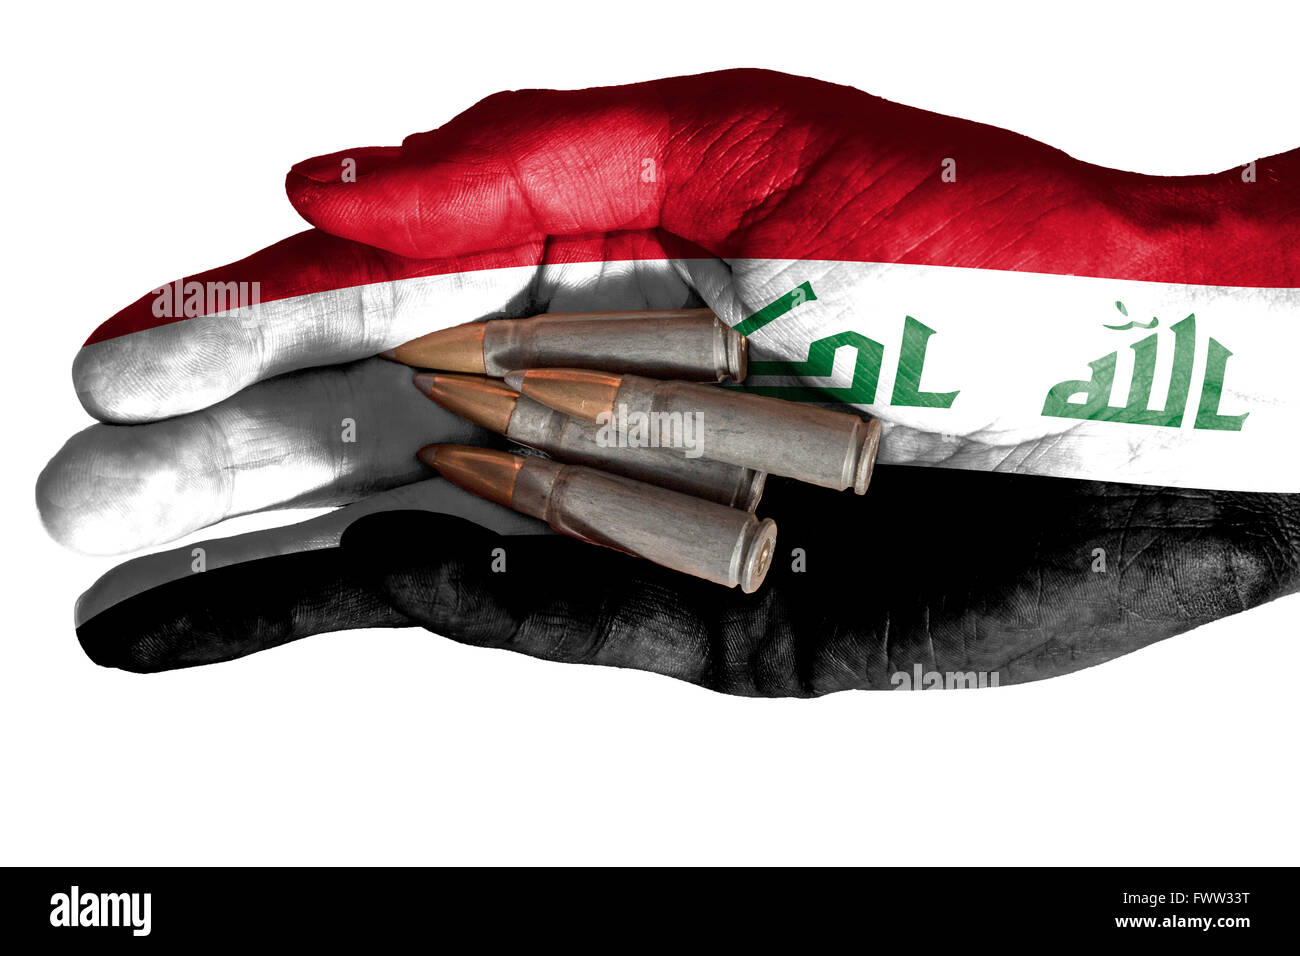 Bandiera della Siria sovrapposta la mano di un uomo adulto regge quattro proiettili. Immagine concettuale per la guerra, la violenza, conflitti. Immagine isola Foto Stock